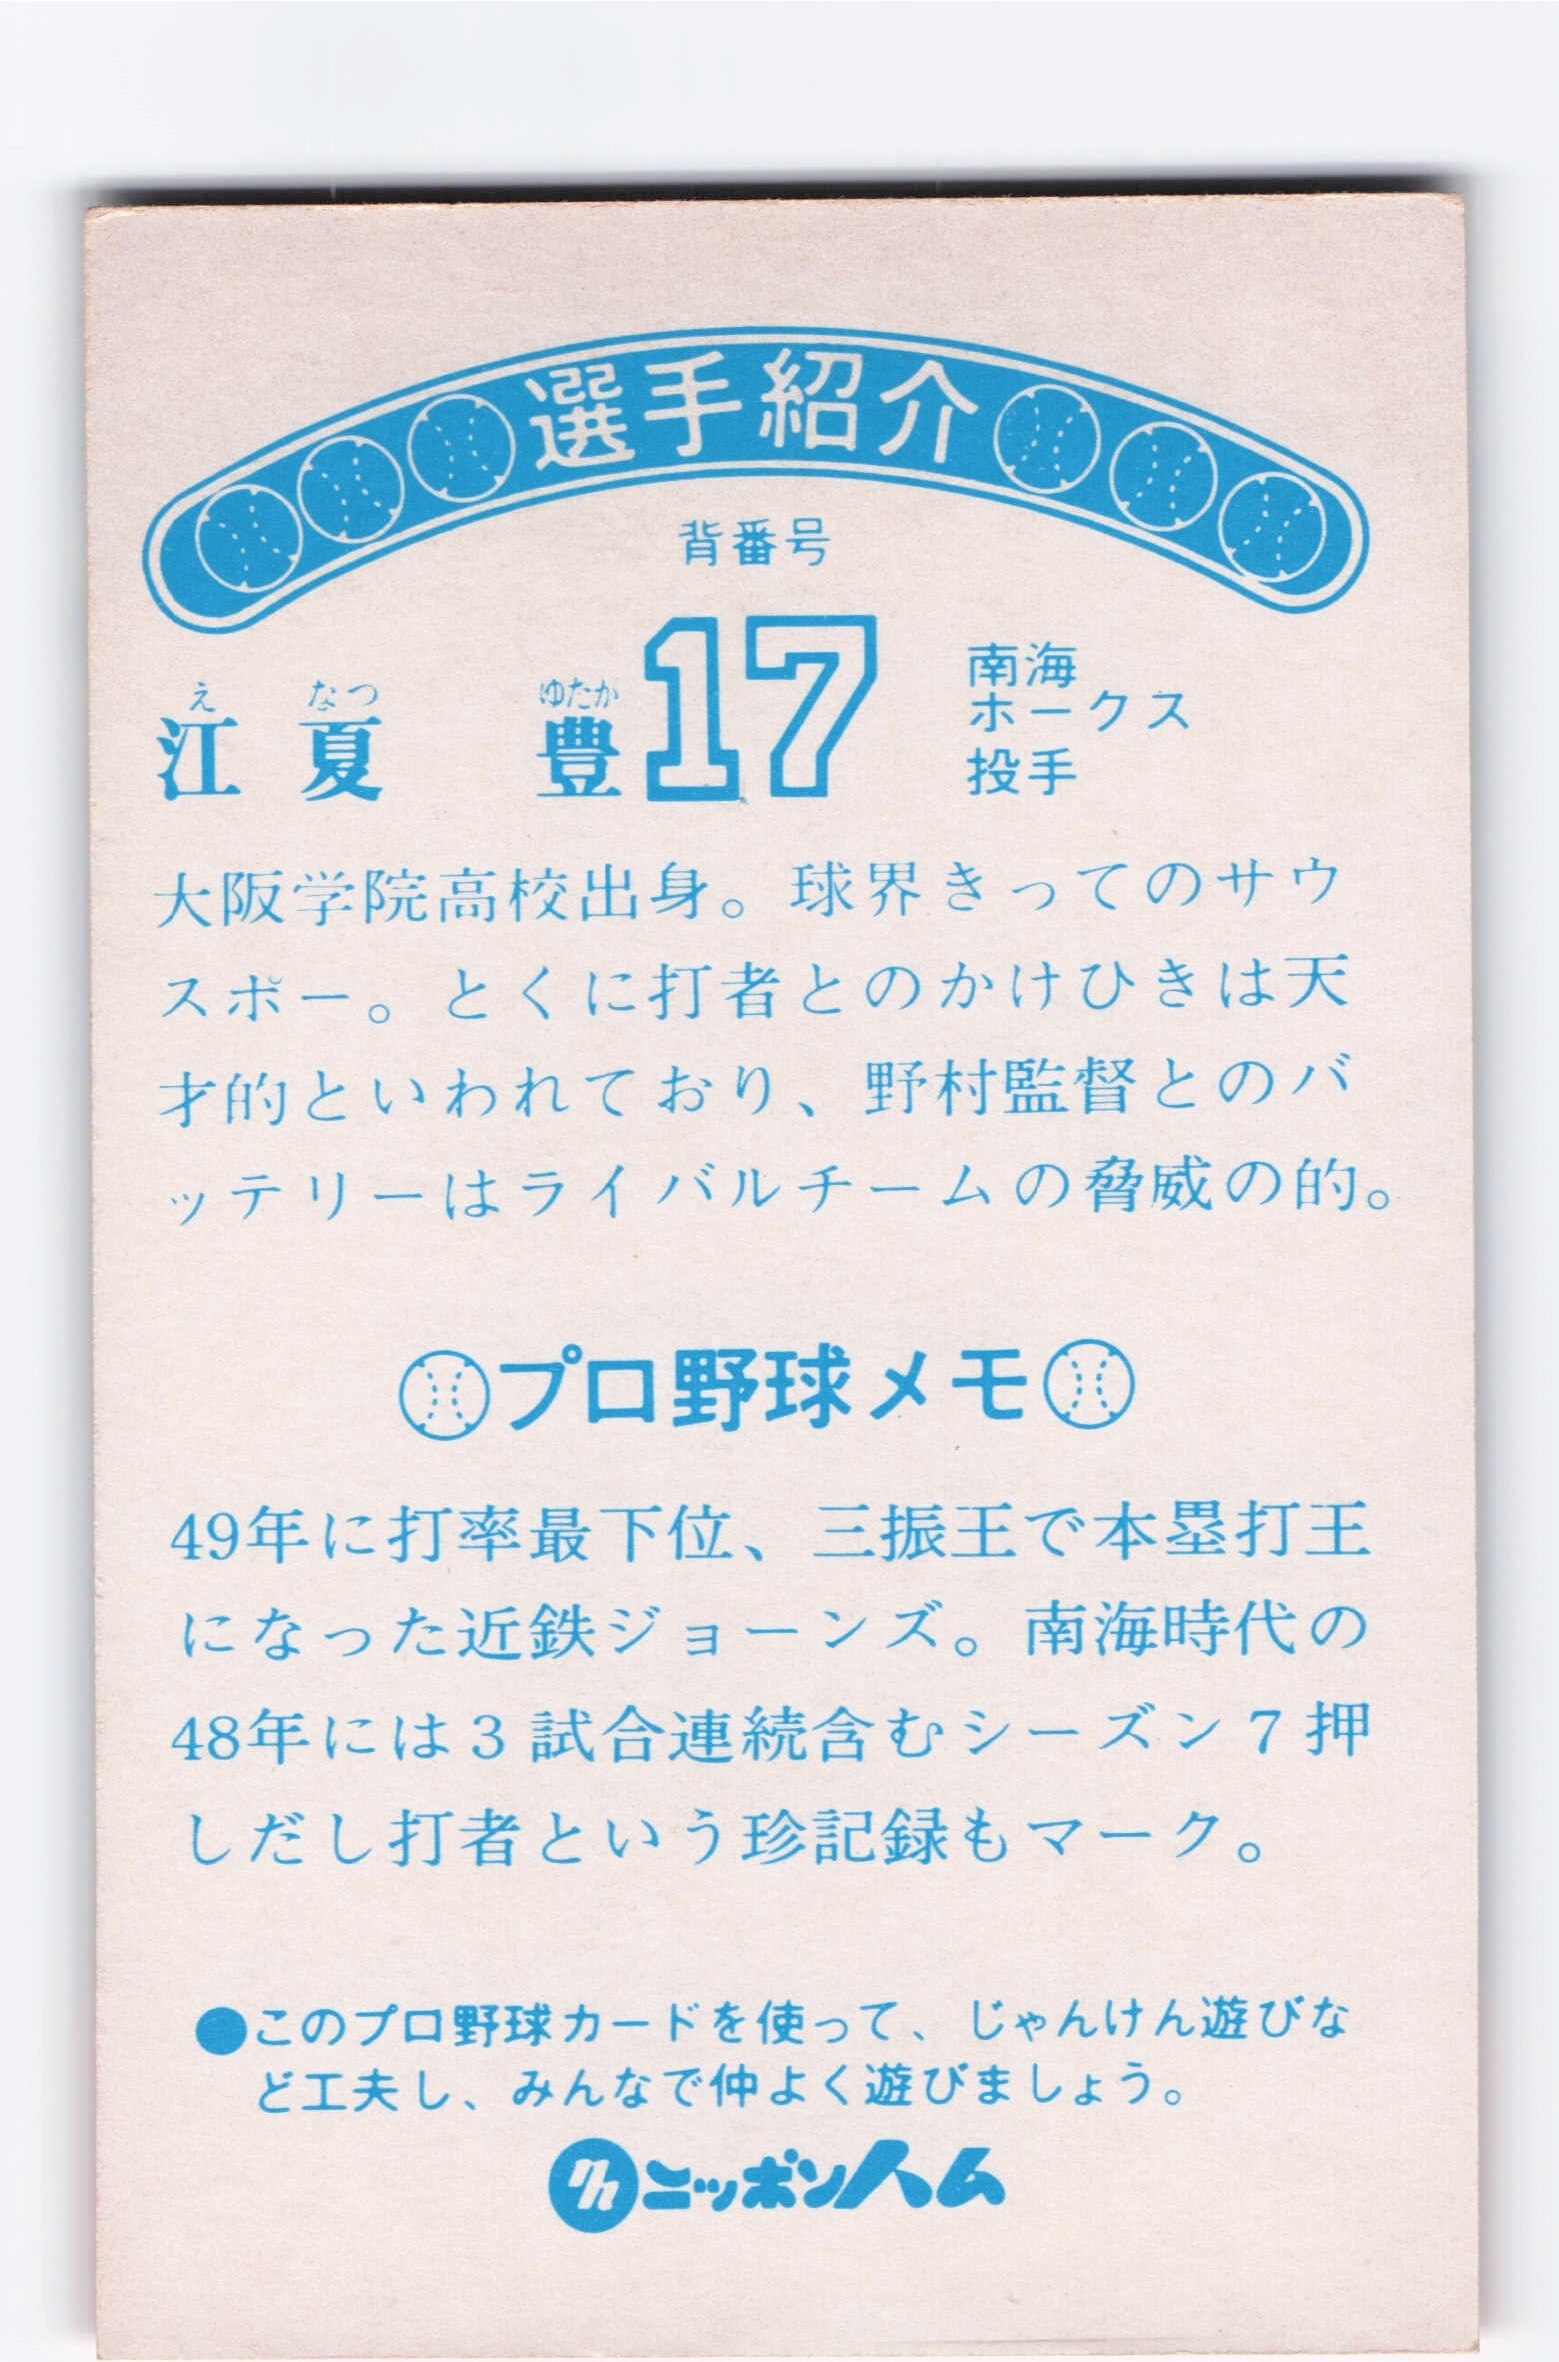 ゴシック版ニッポンハムホームランソーセージ前期版(76年版) 江夏豊 